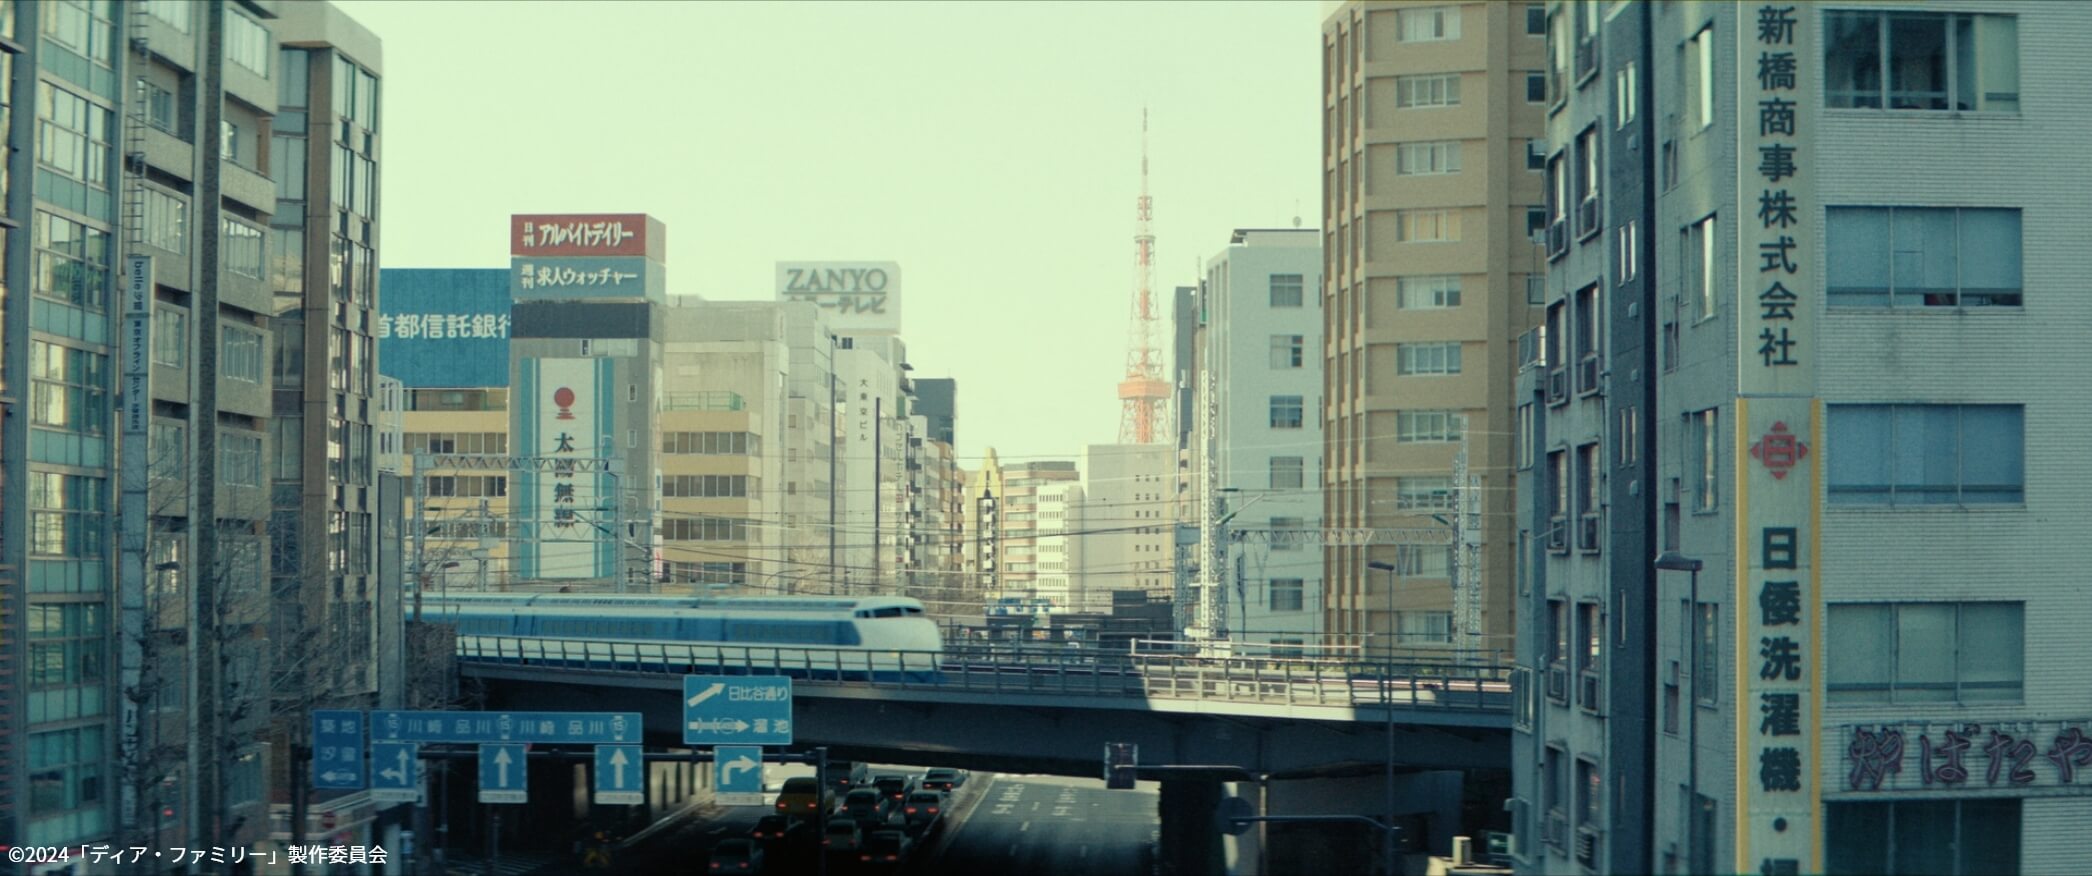 劇中画像2 東京・新橋駅付近のビル群